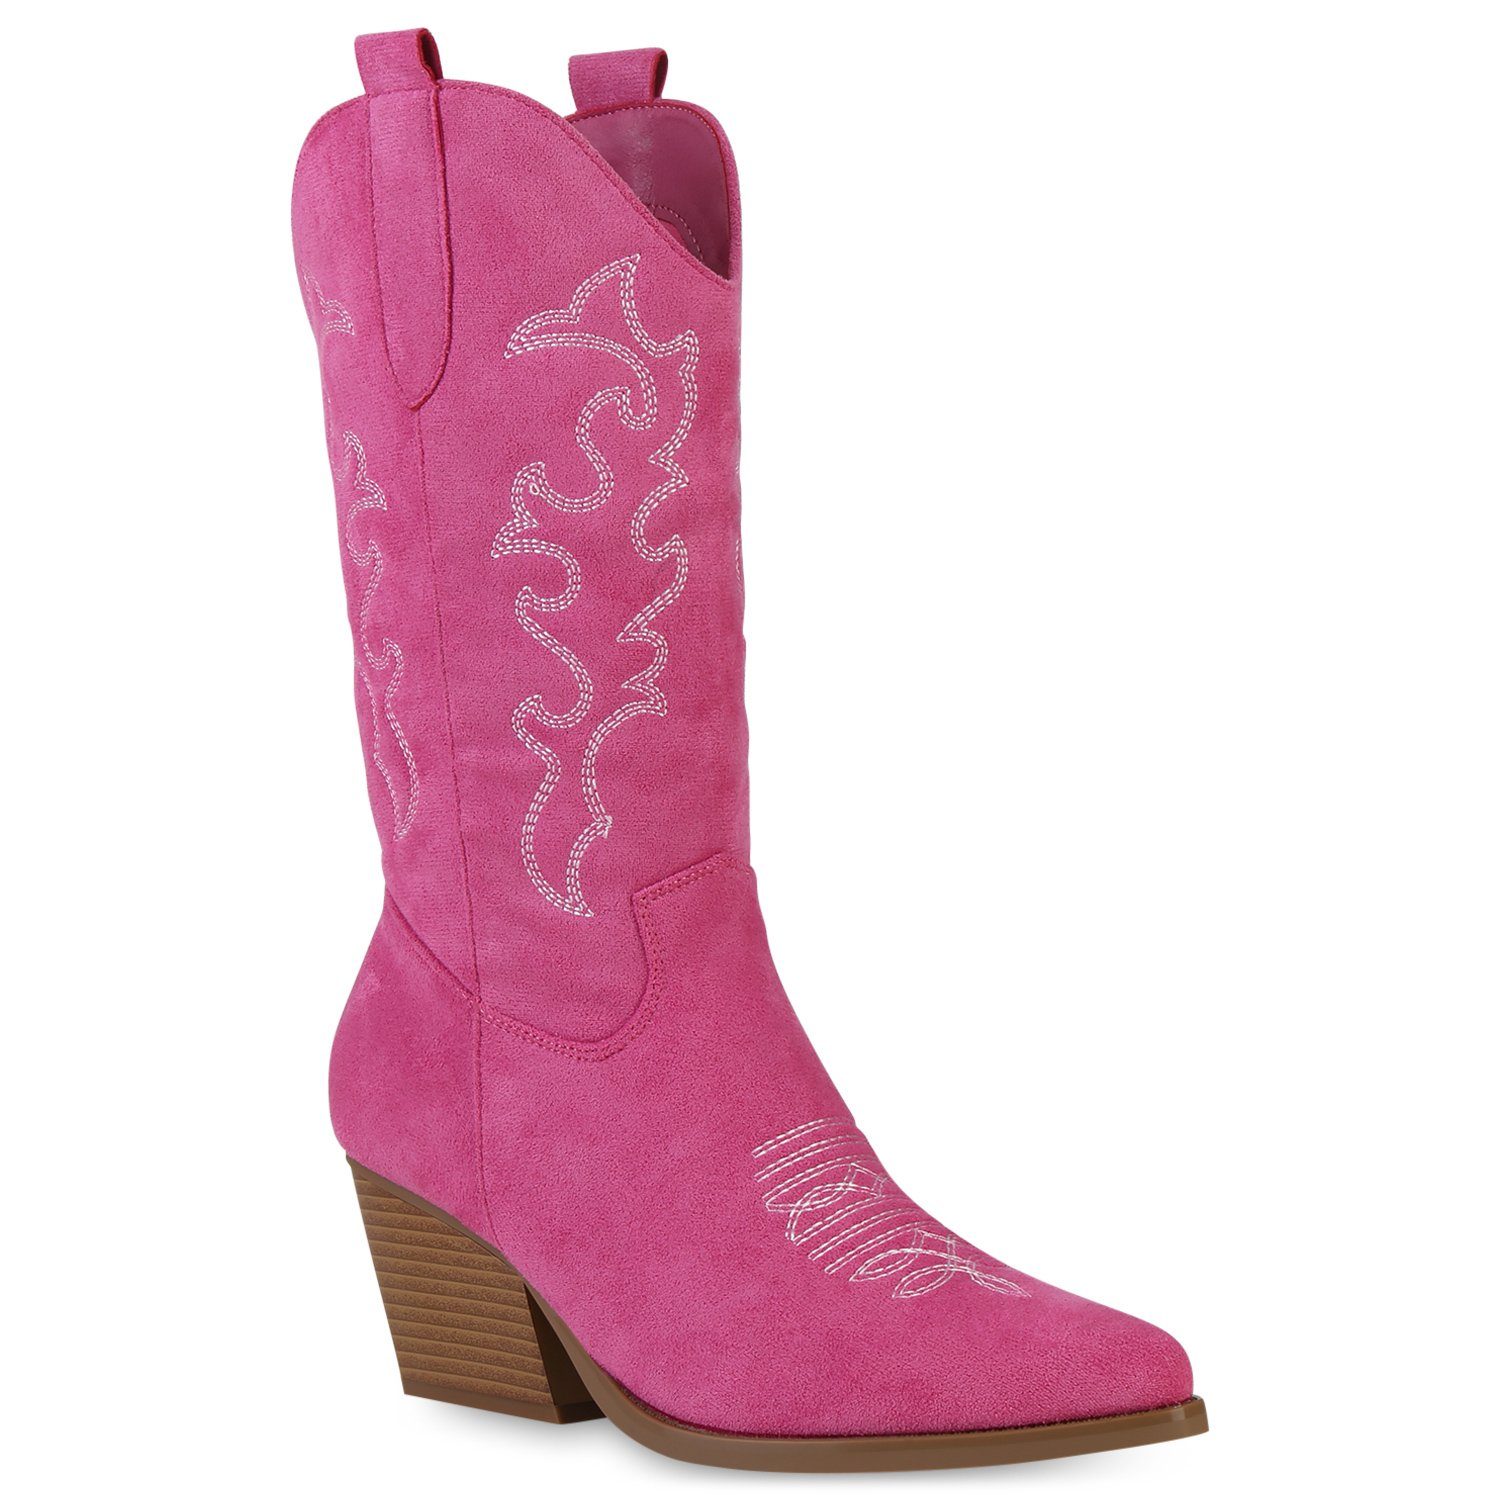 Rosa Stiefel für Damen online kaufen » Pinke Stiefel | OTTO